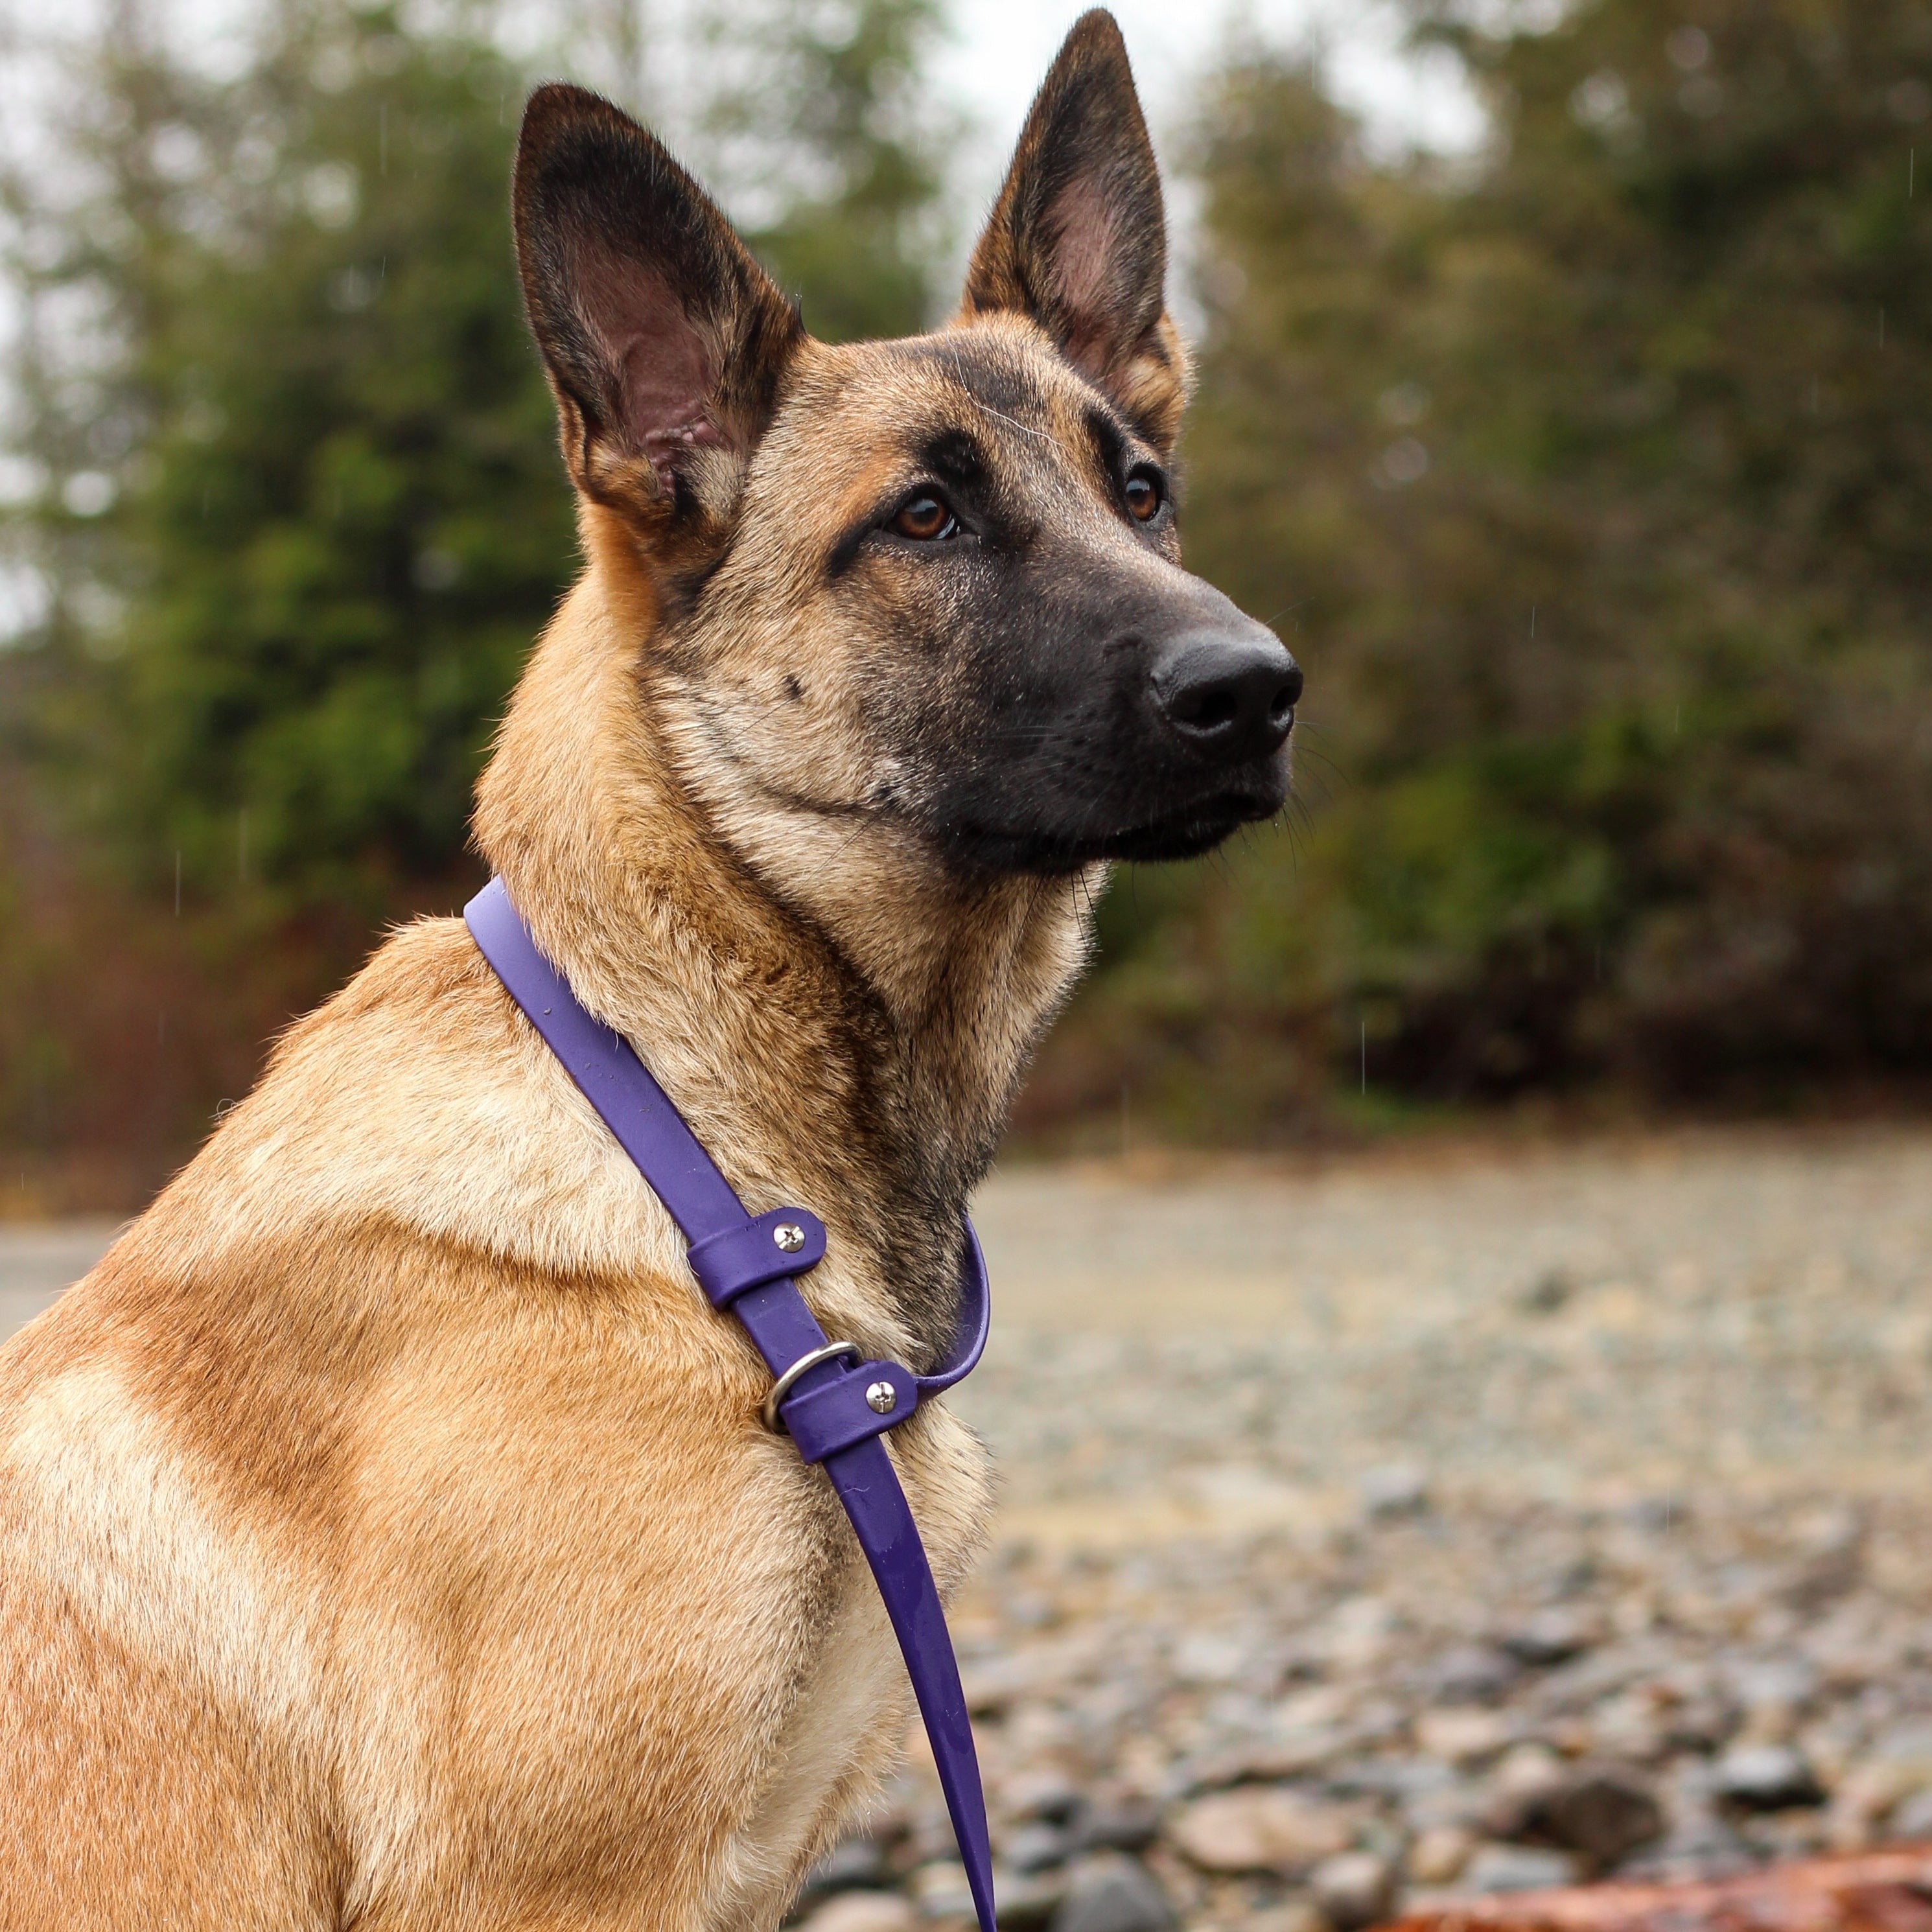 Shepherd Puppy wearing a Purple Biothane Slip Lead